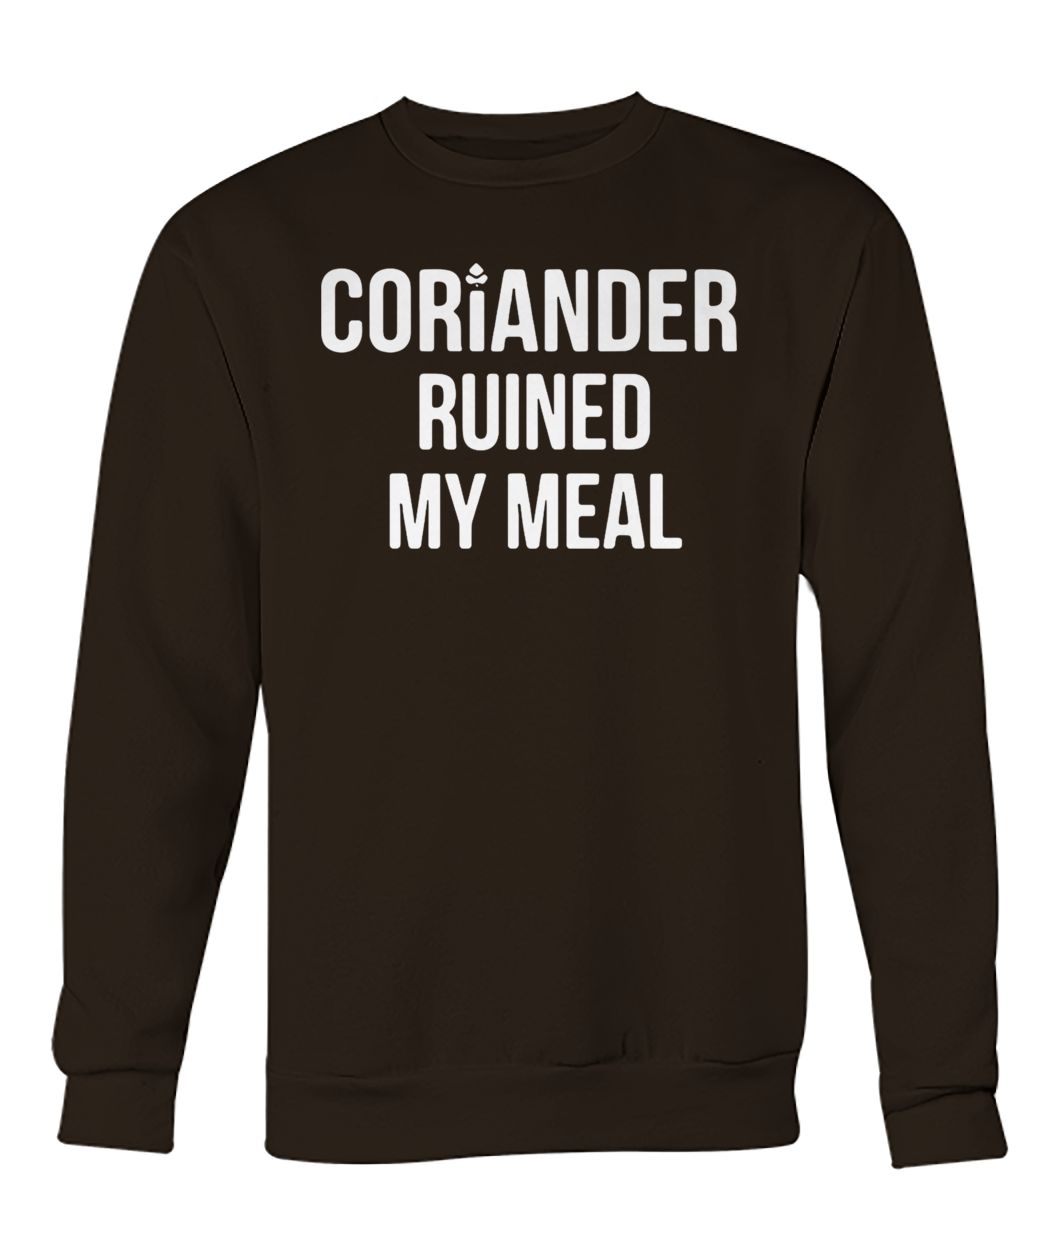 Coriander ruined my meal crew neck sweatshirt